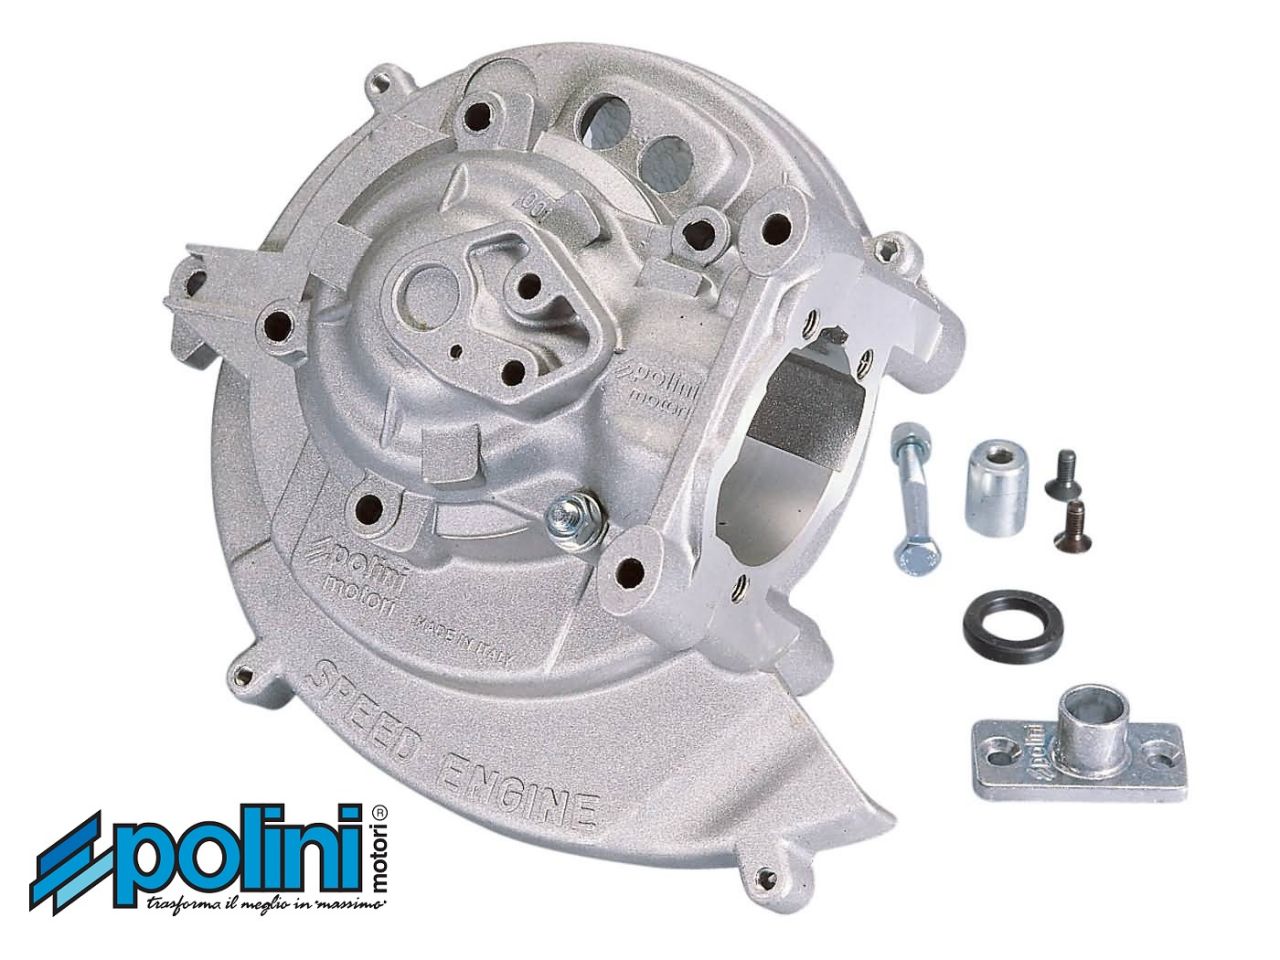 Polini Carter Kurbelgehäuse 50-80ccm für Kontaktzündung Speed Engine von Polini